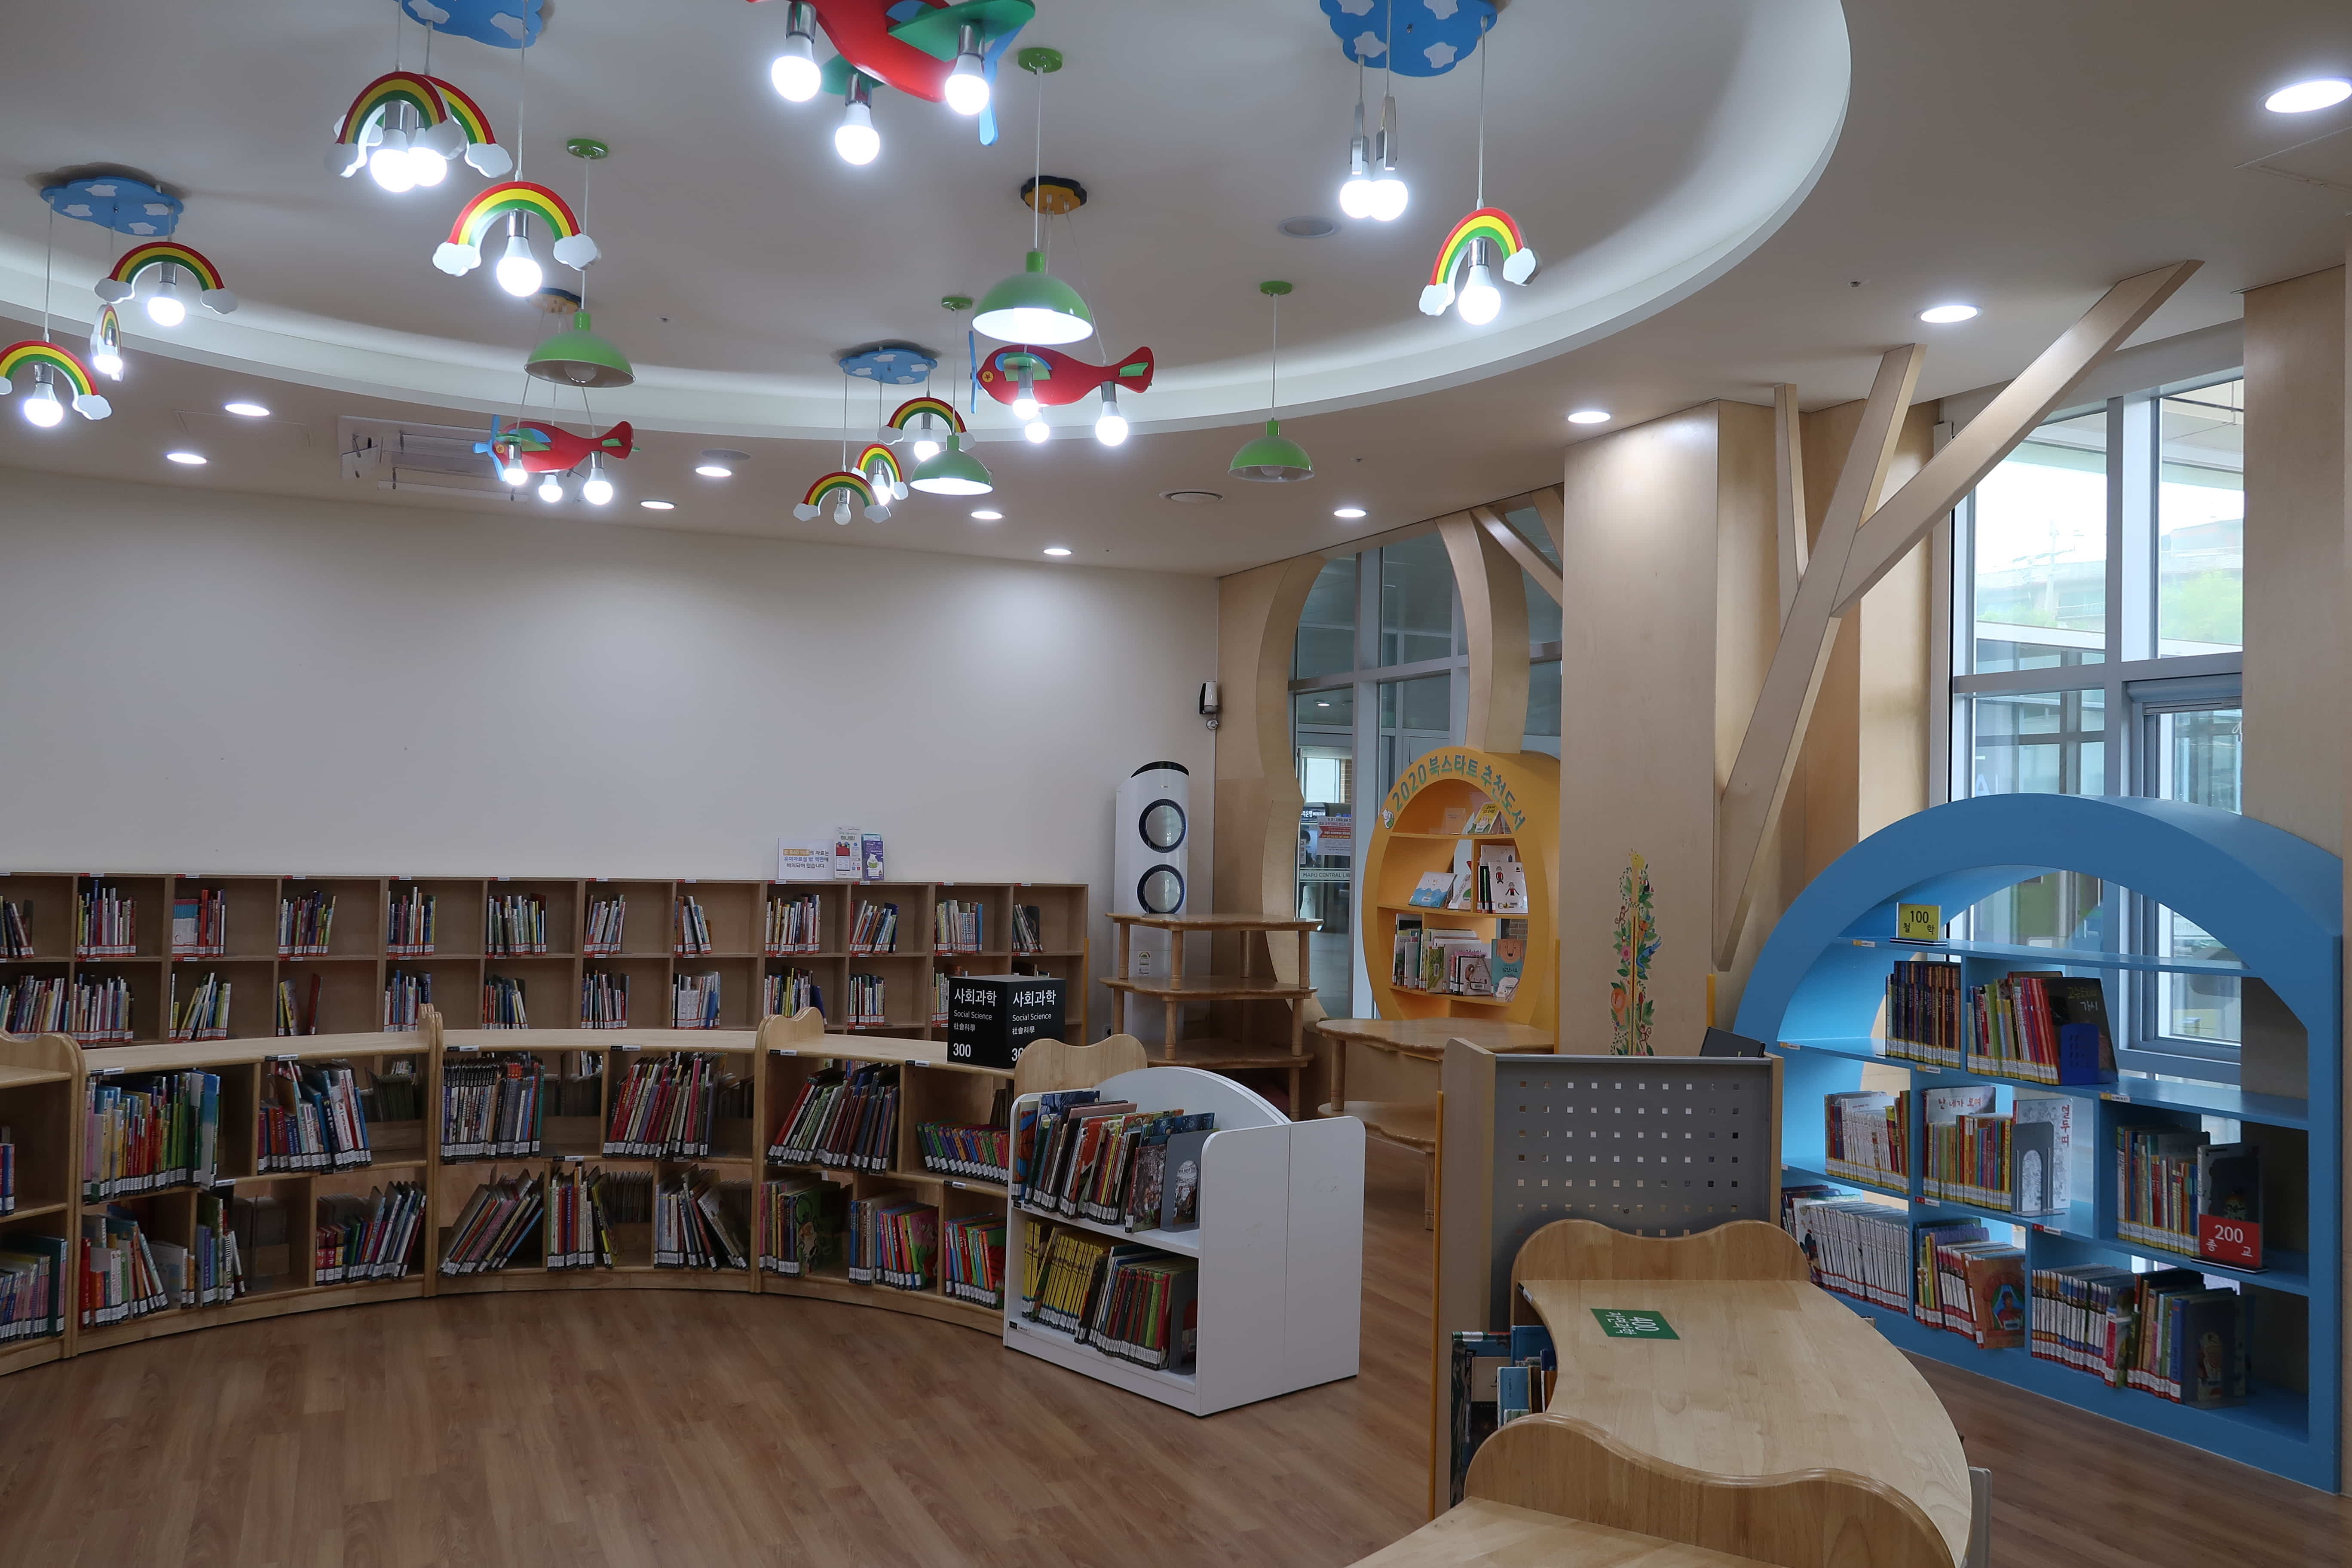 마포중앙도서관1 : 천장에 모빌모양의 밝은 조명이 설치된 마포중앙도서관 어린이열람실 전경